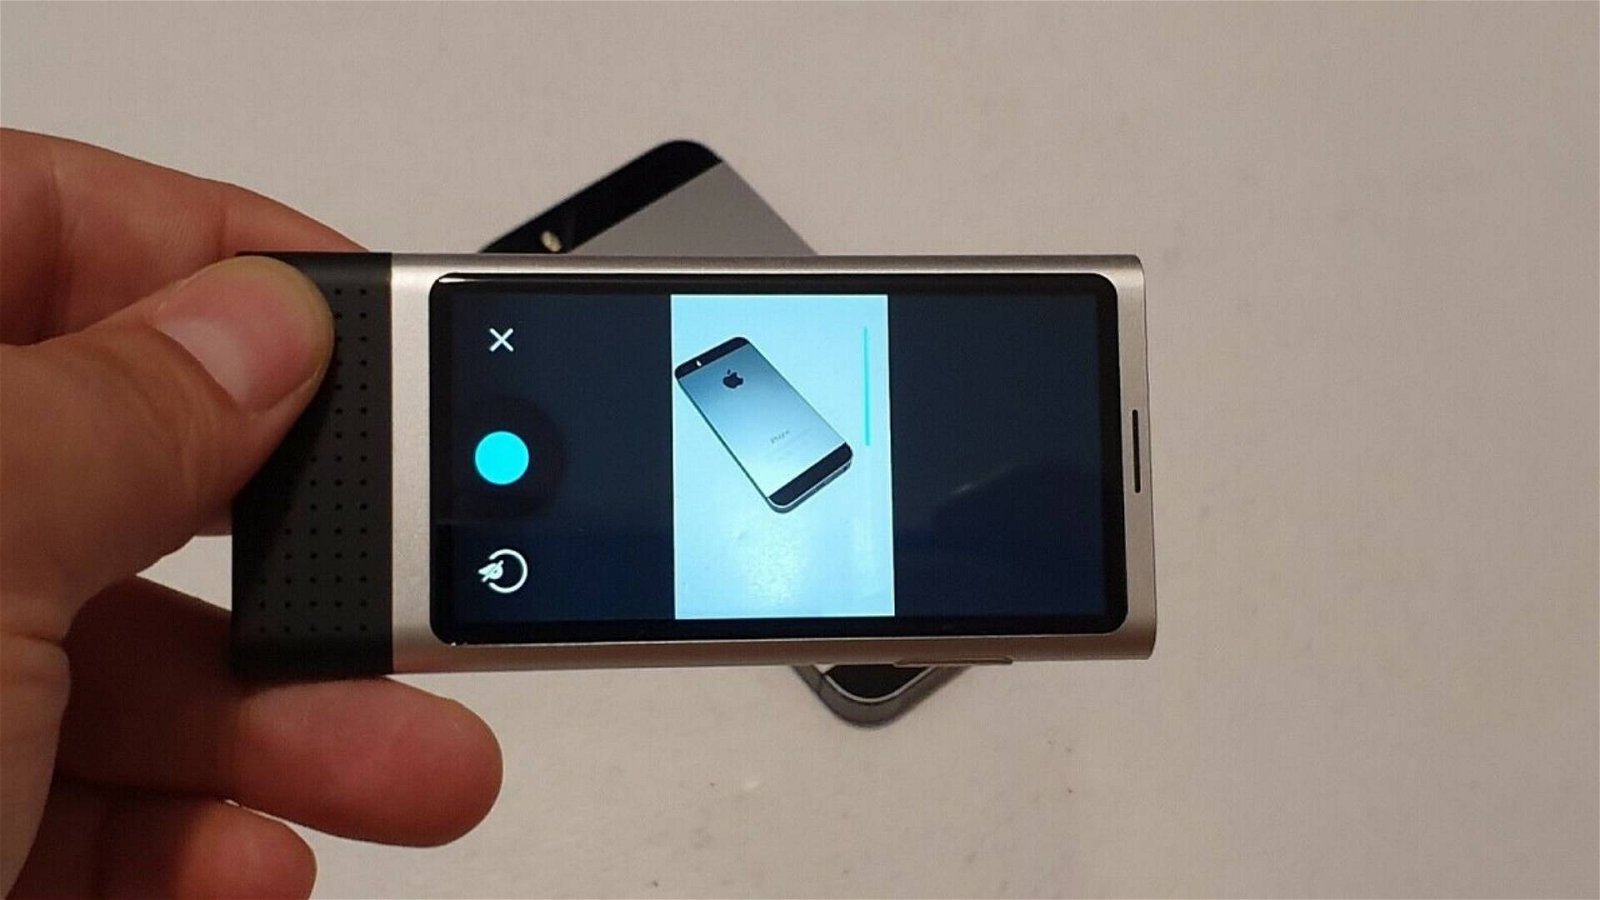 Immagine di Nokia, un prototipo con Android 4.3 all'asta su eBay a 1.999 dollari